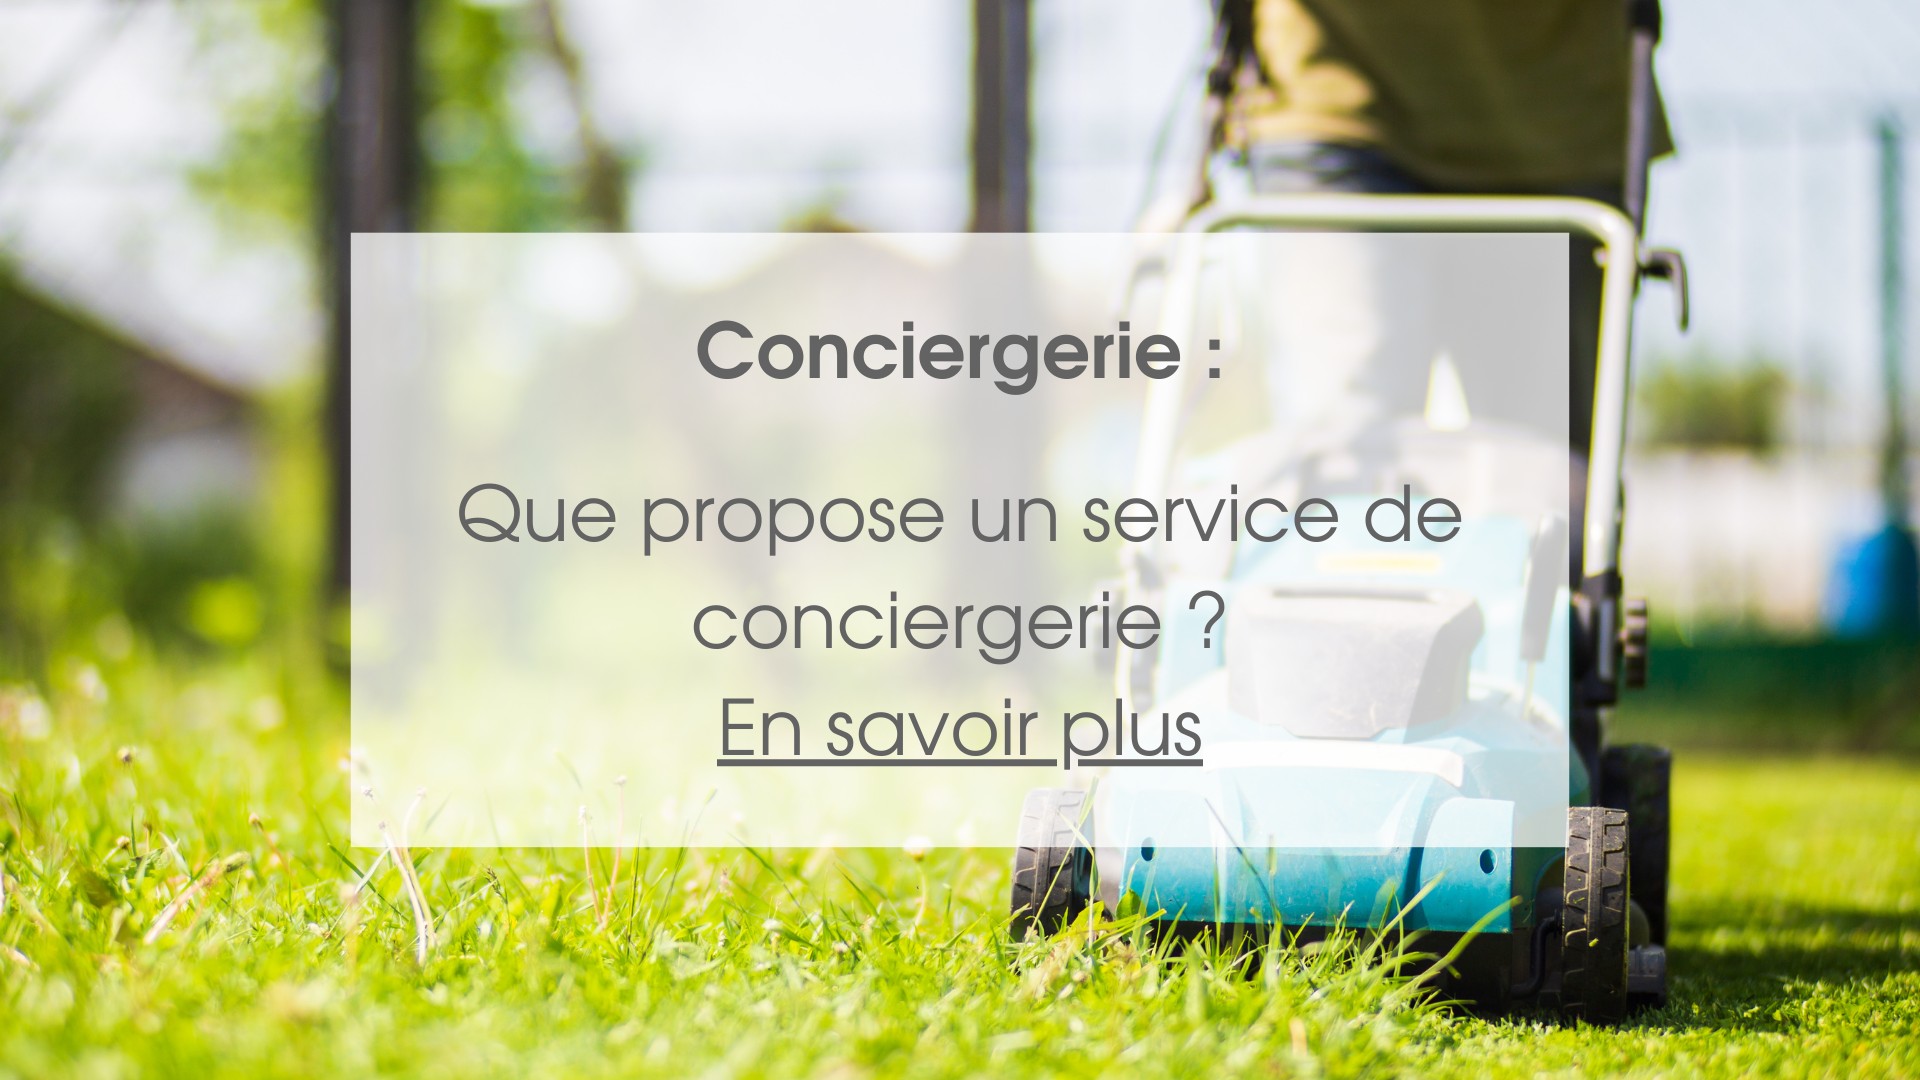 Concierge service: What does a concierge service offer?